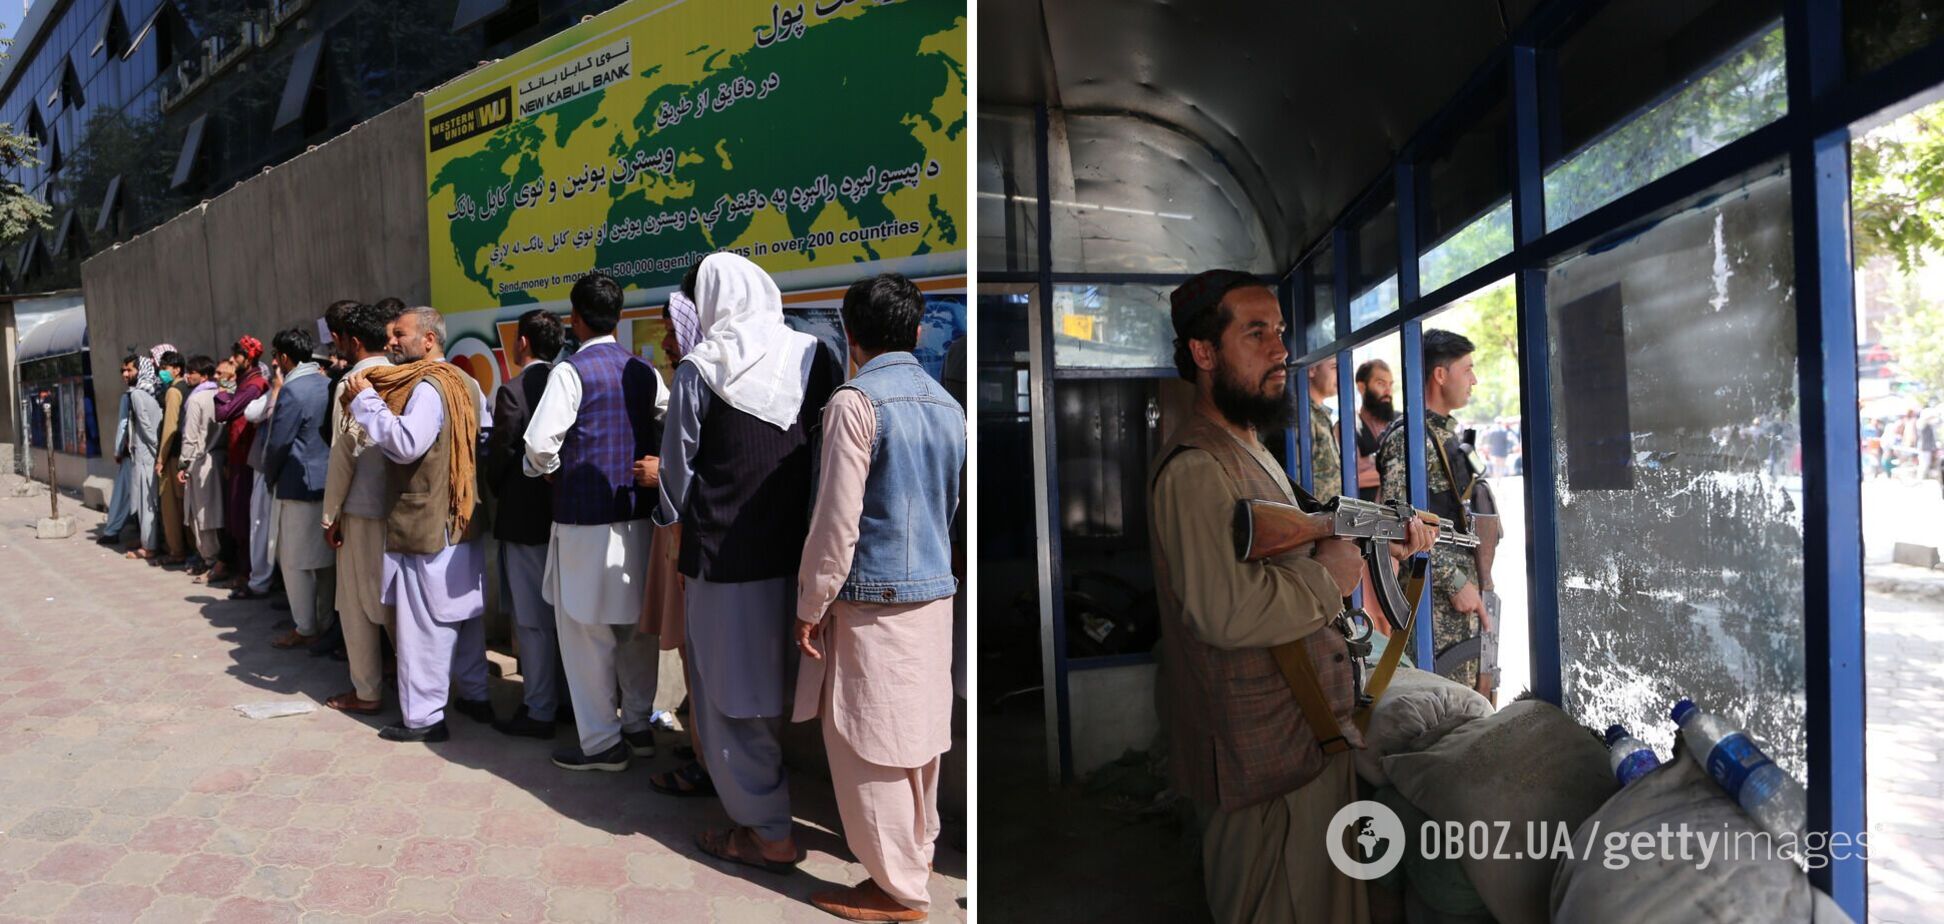 Банки закрыты, у людей нет денег: Афганистан оказался на грани катастрофы после захвата власти талибами. Фото